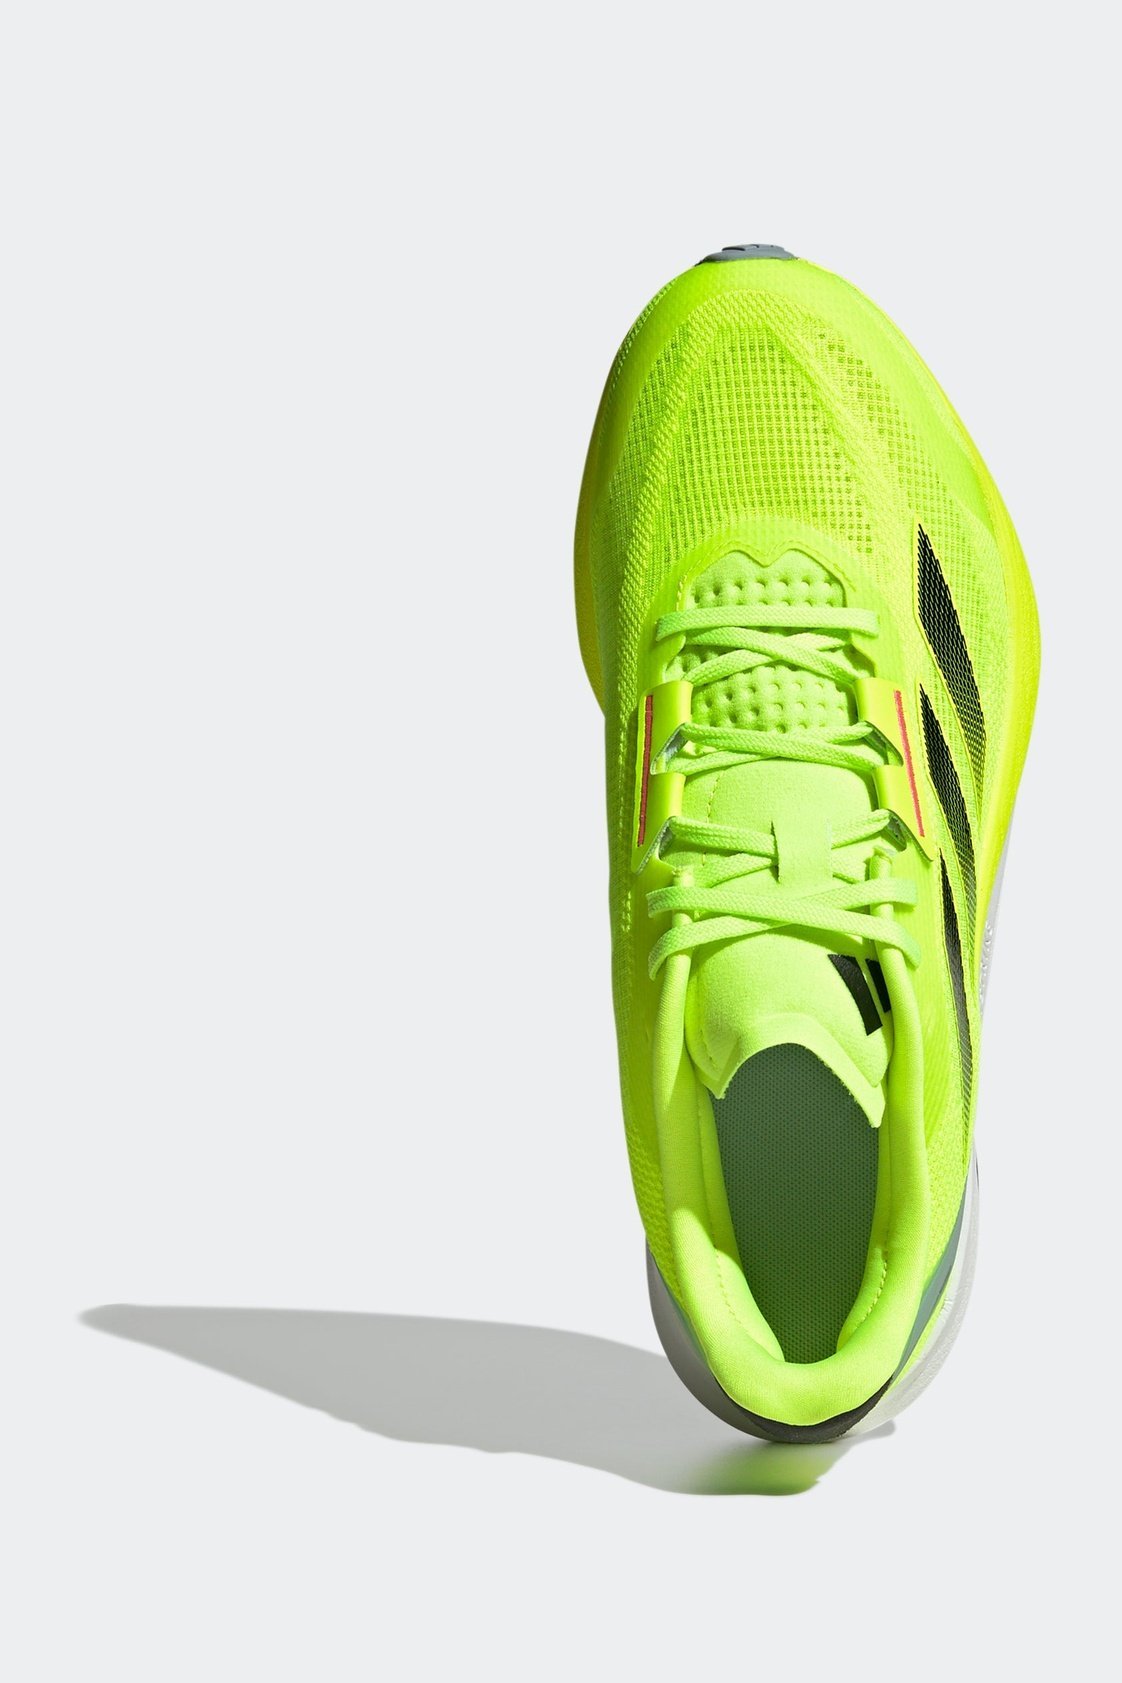 ADIDAS - נעלי ריצה לגבר DURAMO SPEED בצבע ליים - MASHBIR//365